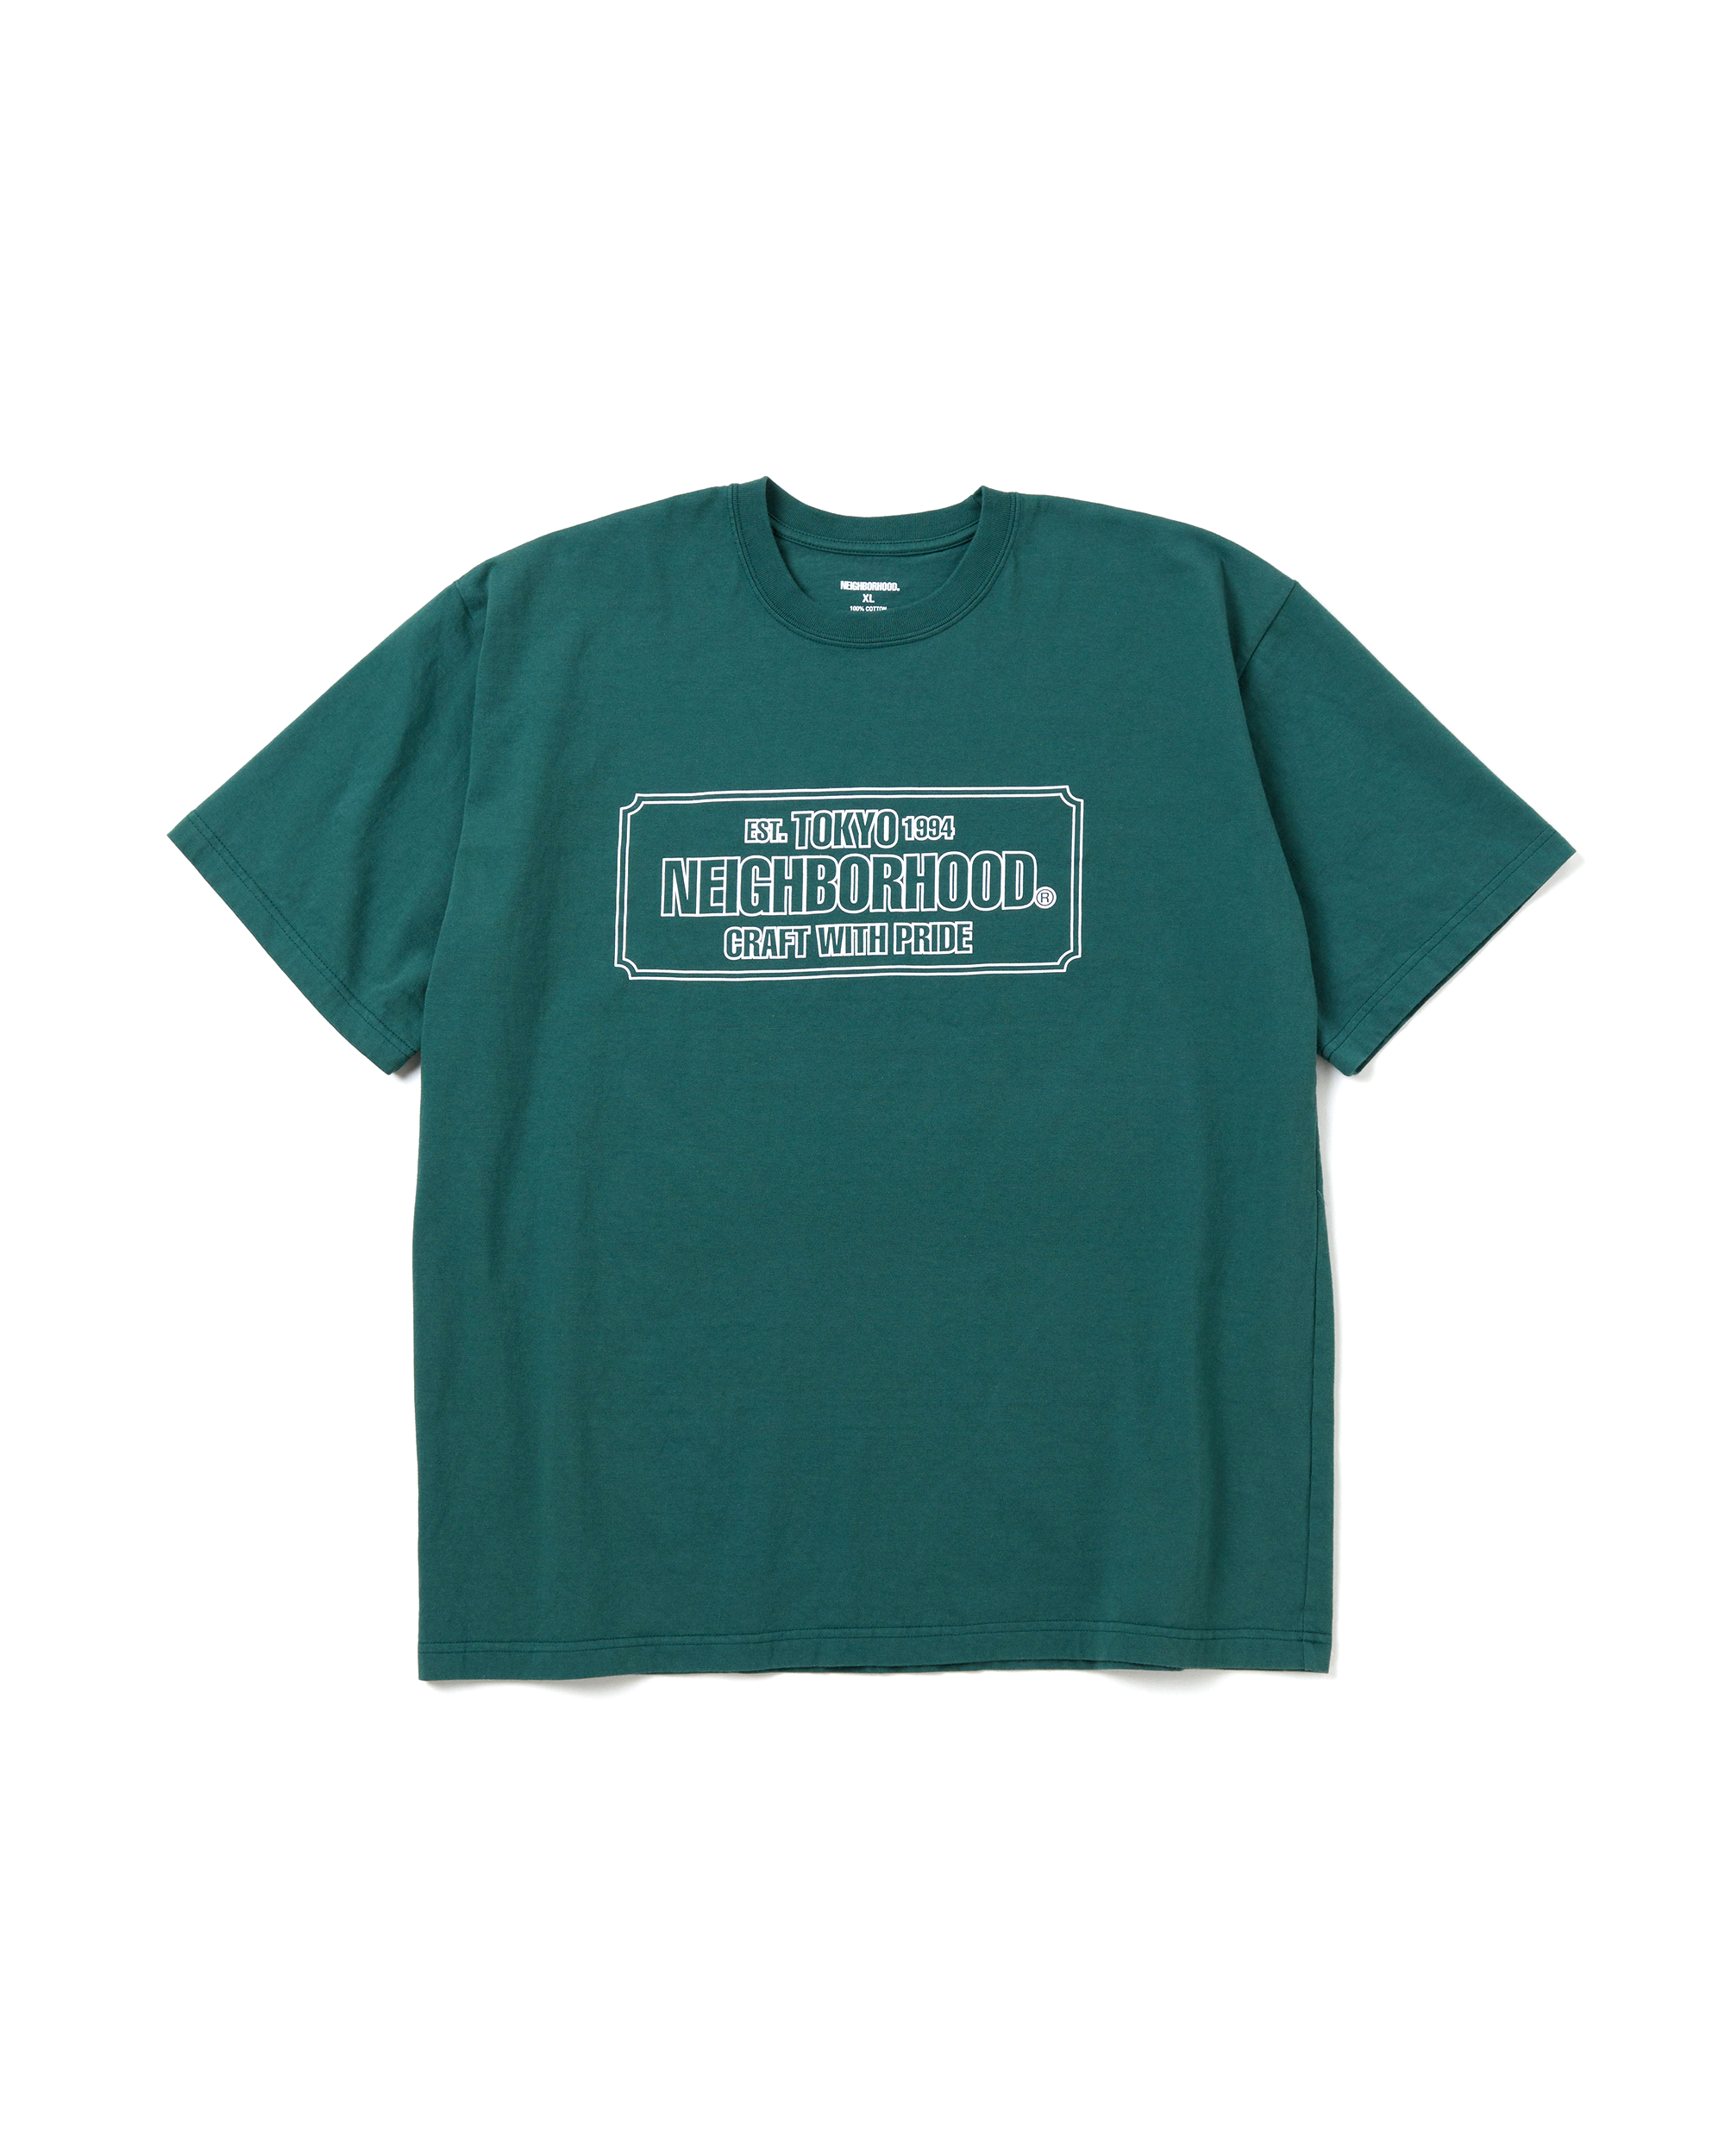 NH SS-1 T-Shirt - Green